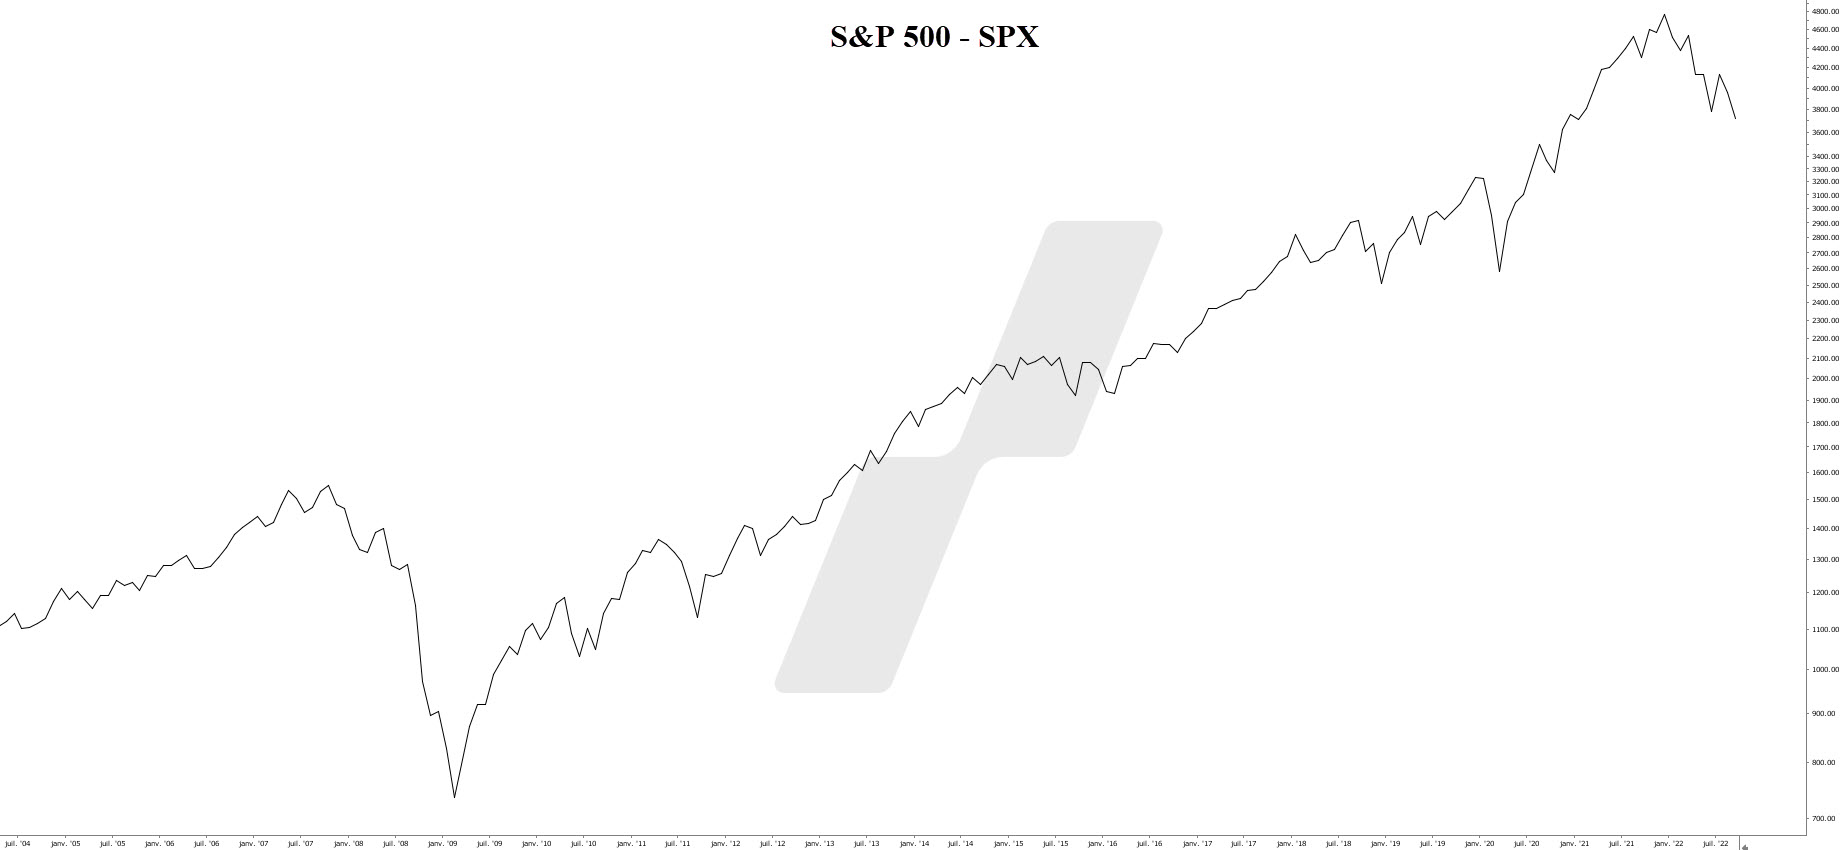 seuil rentabilité - break even - graphique S&P 500